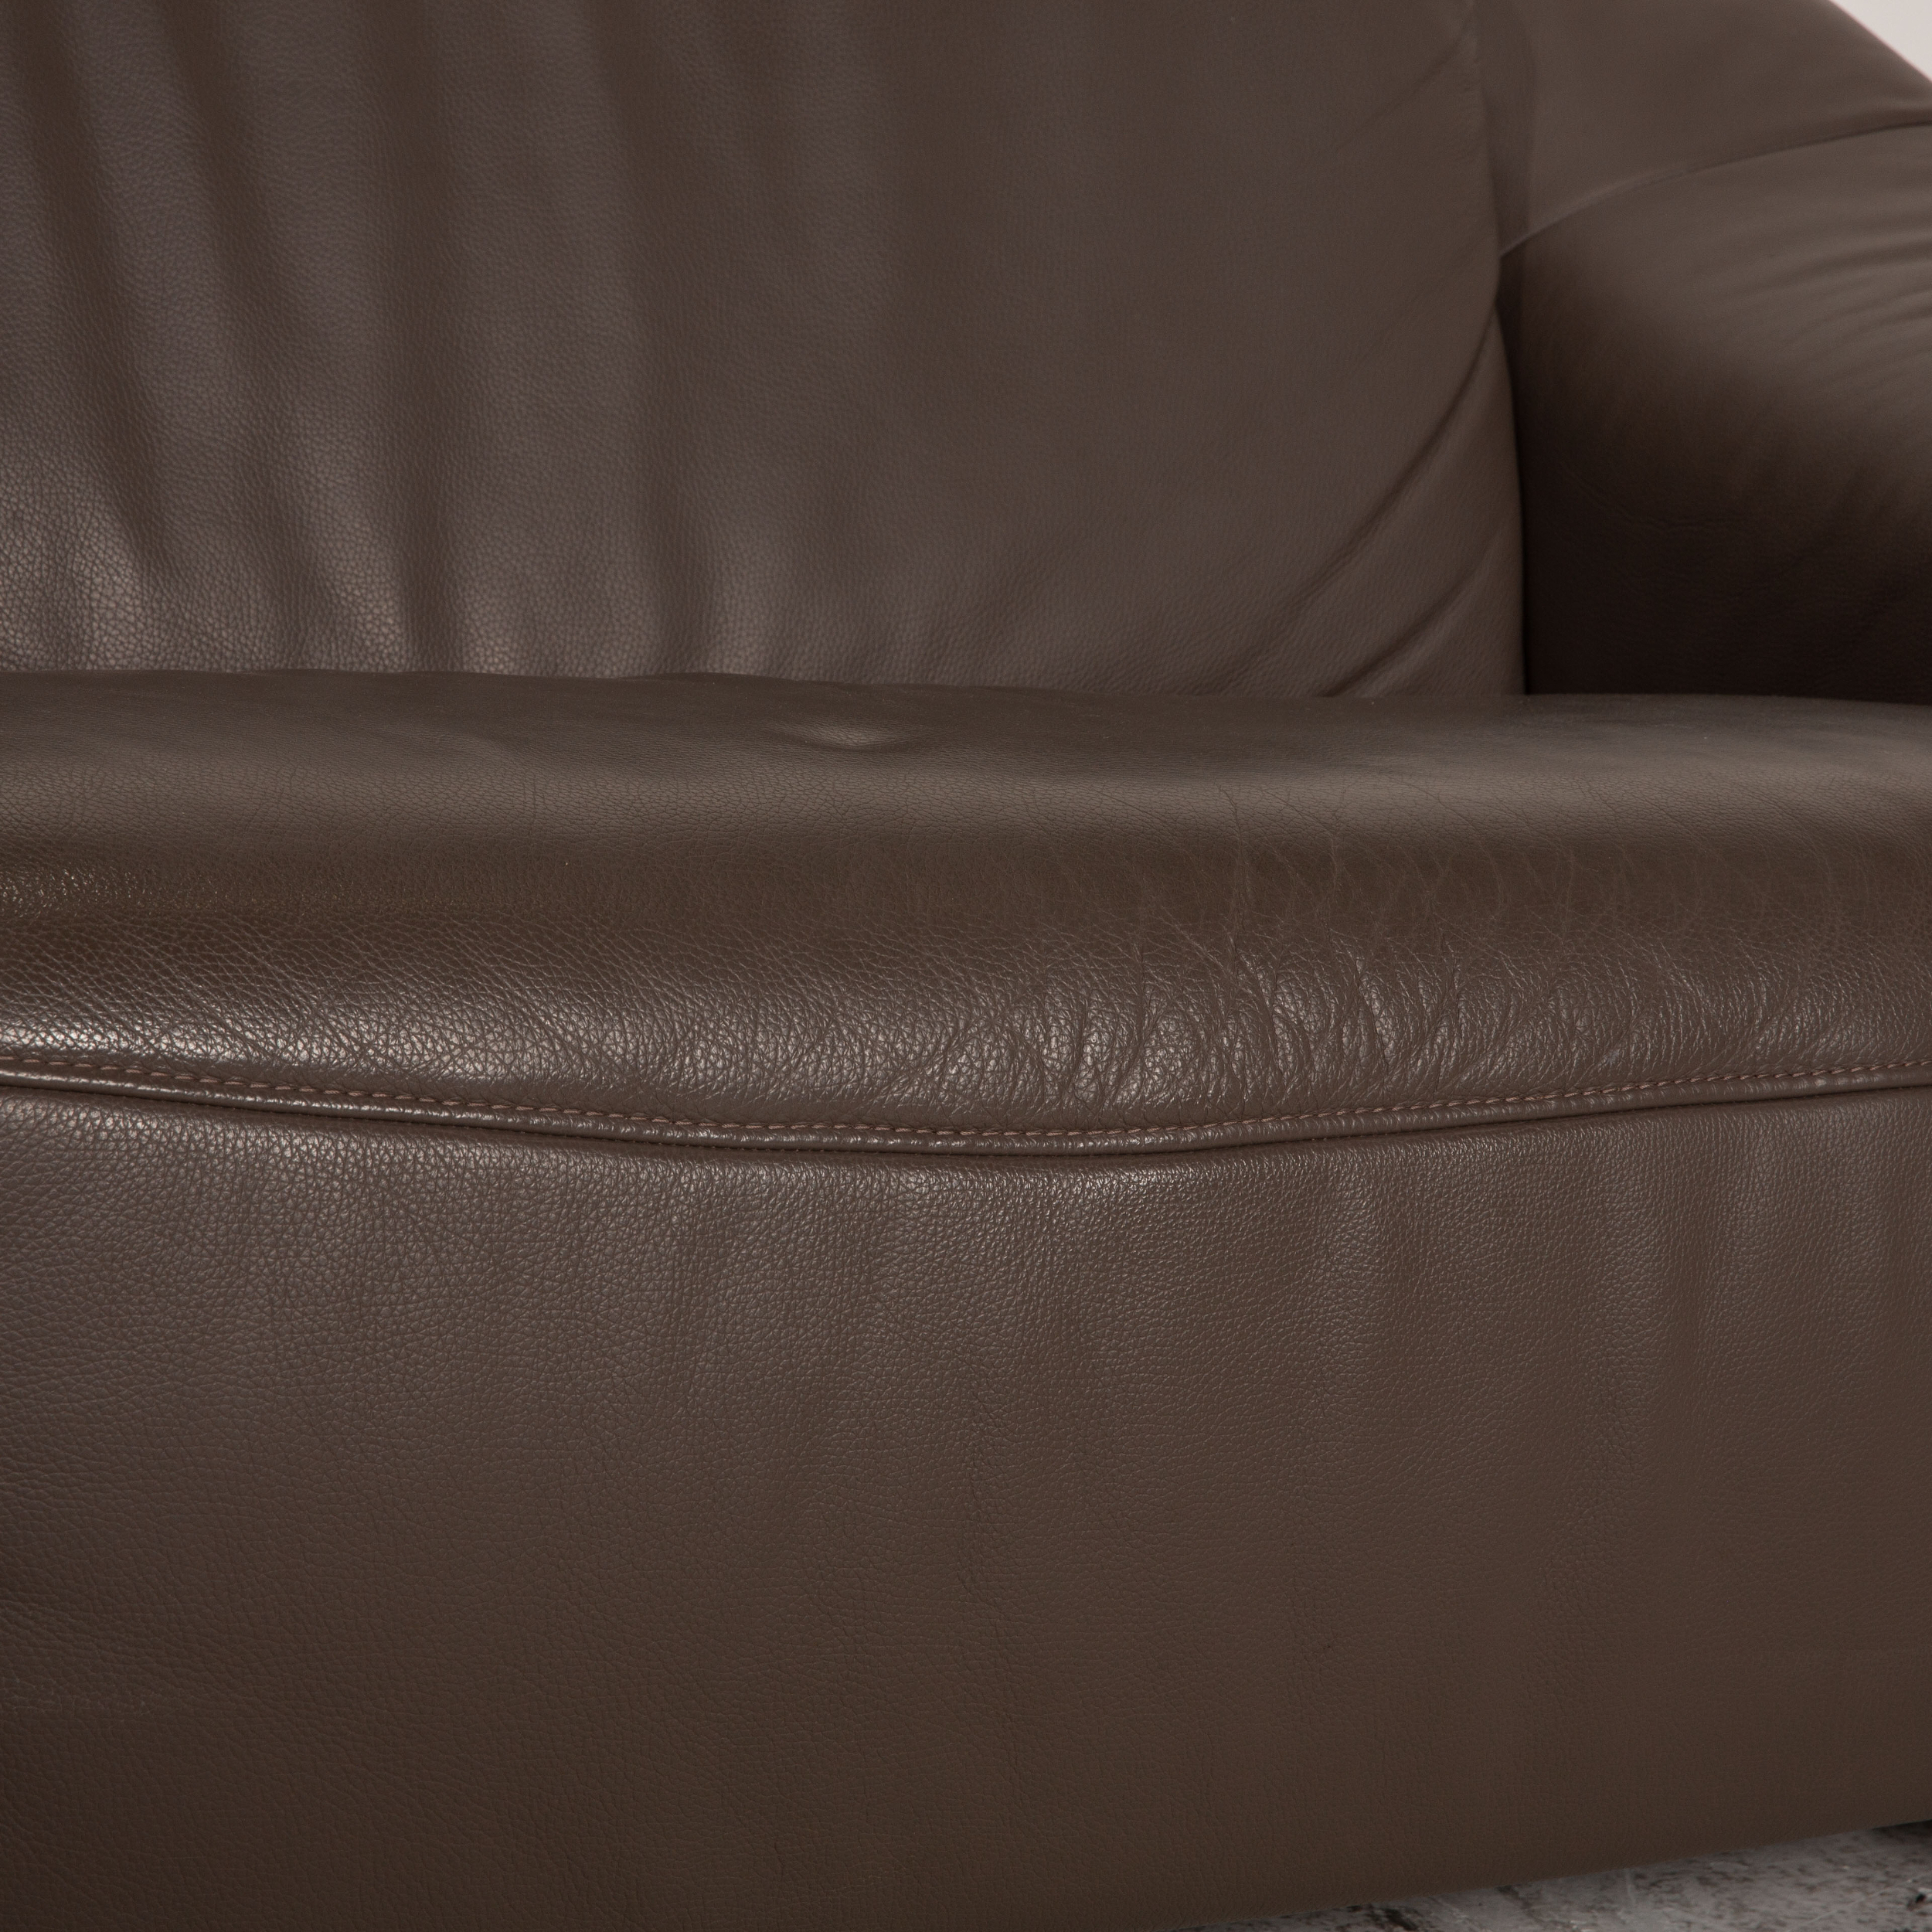 Planopoly Motion Sofa 3-Sitzer Grau